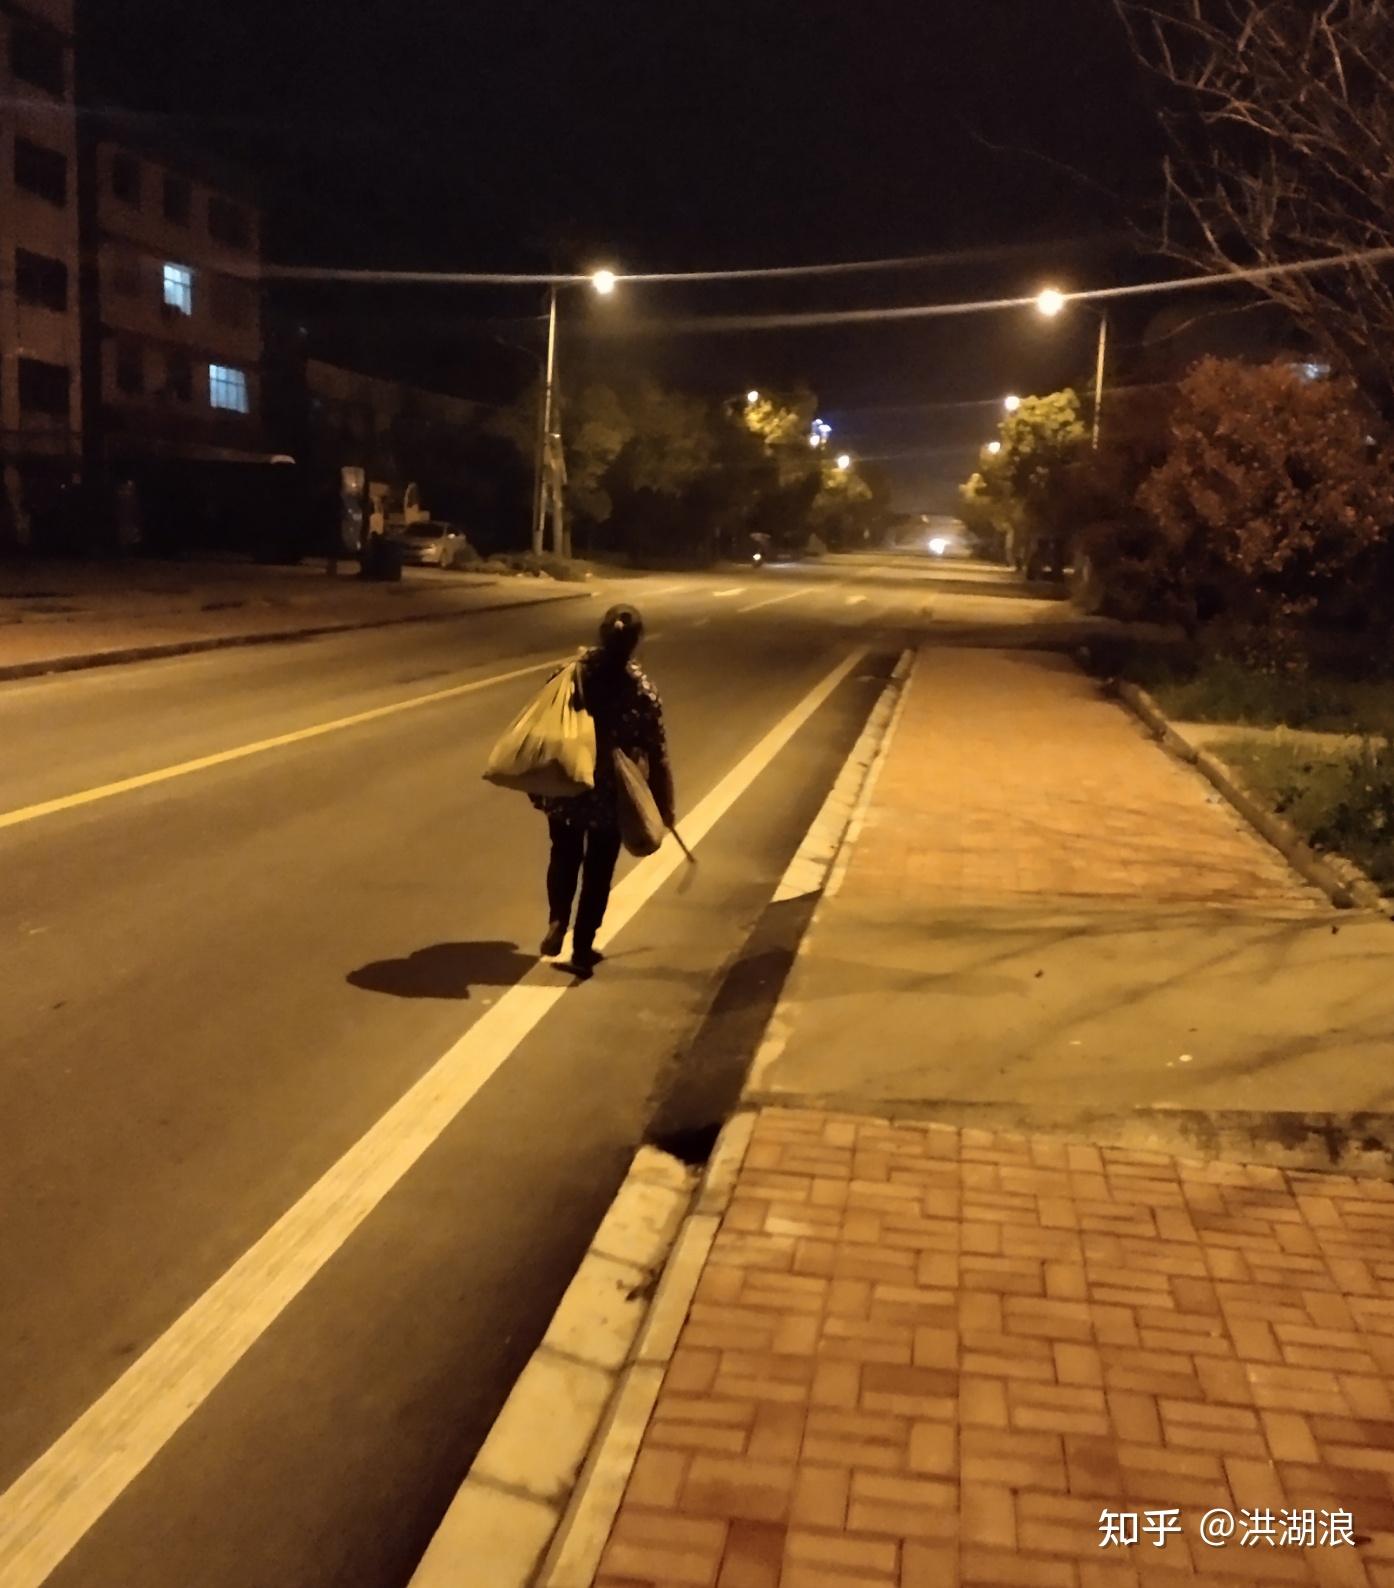 夜晚散步照片 一个人图片